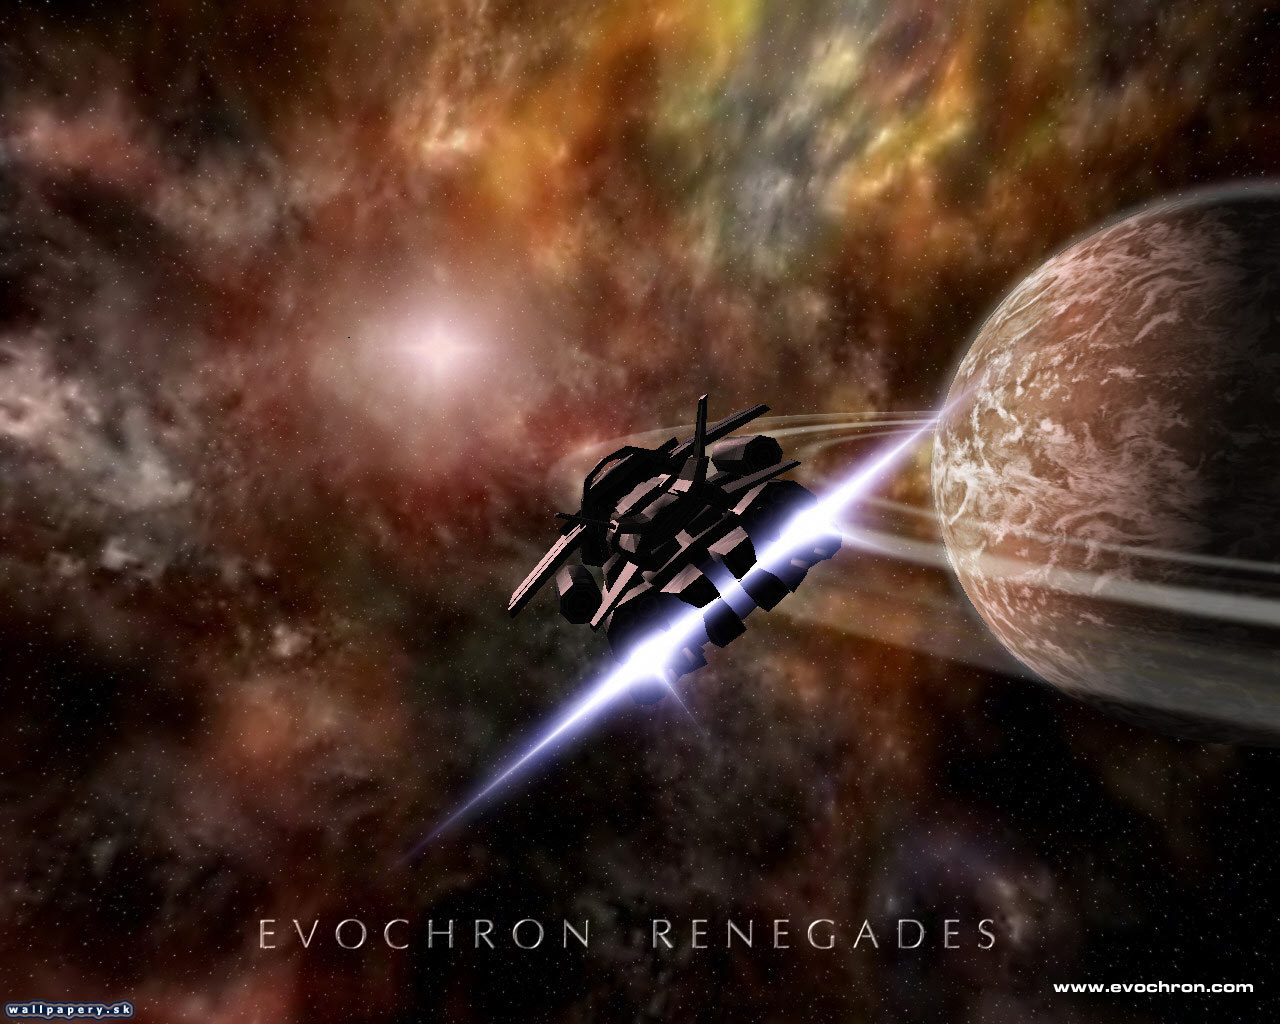 Evochron Renegades - wallpaper 2